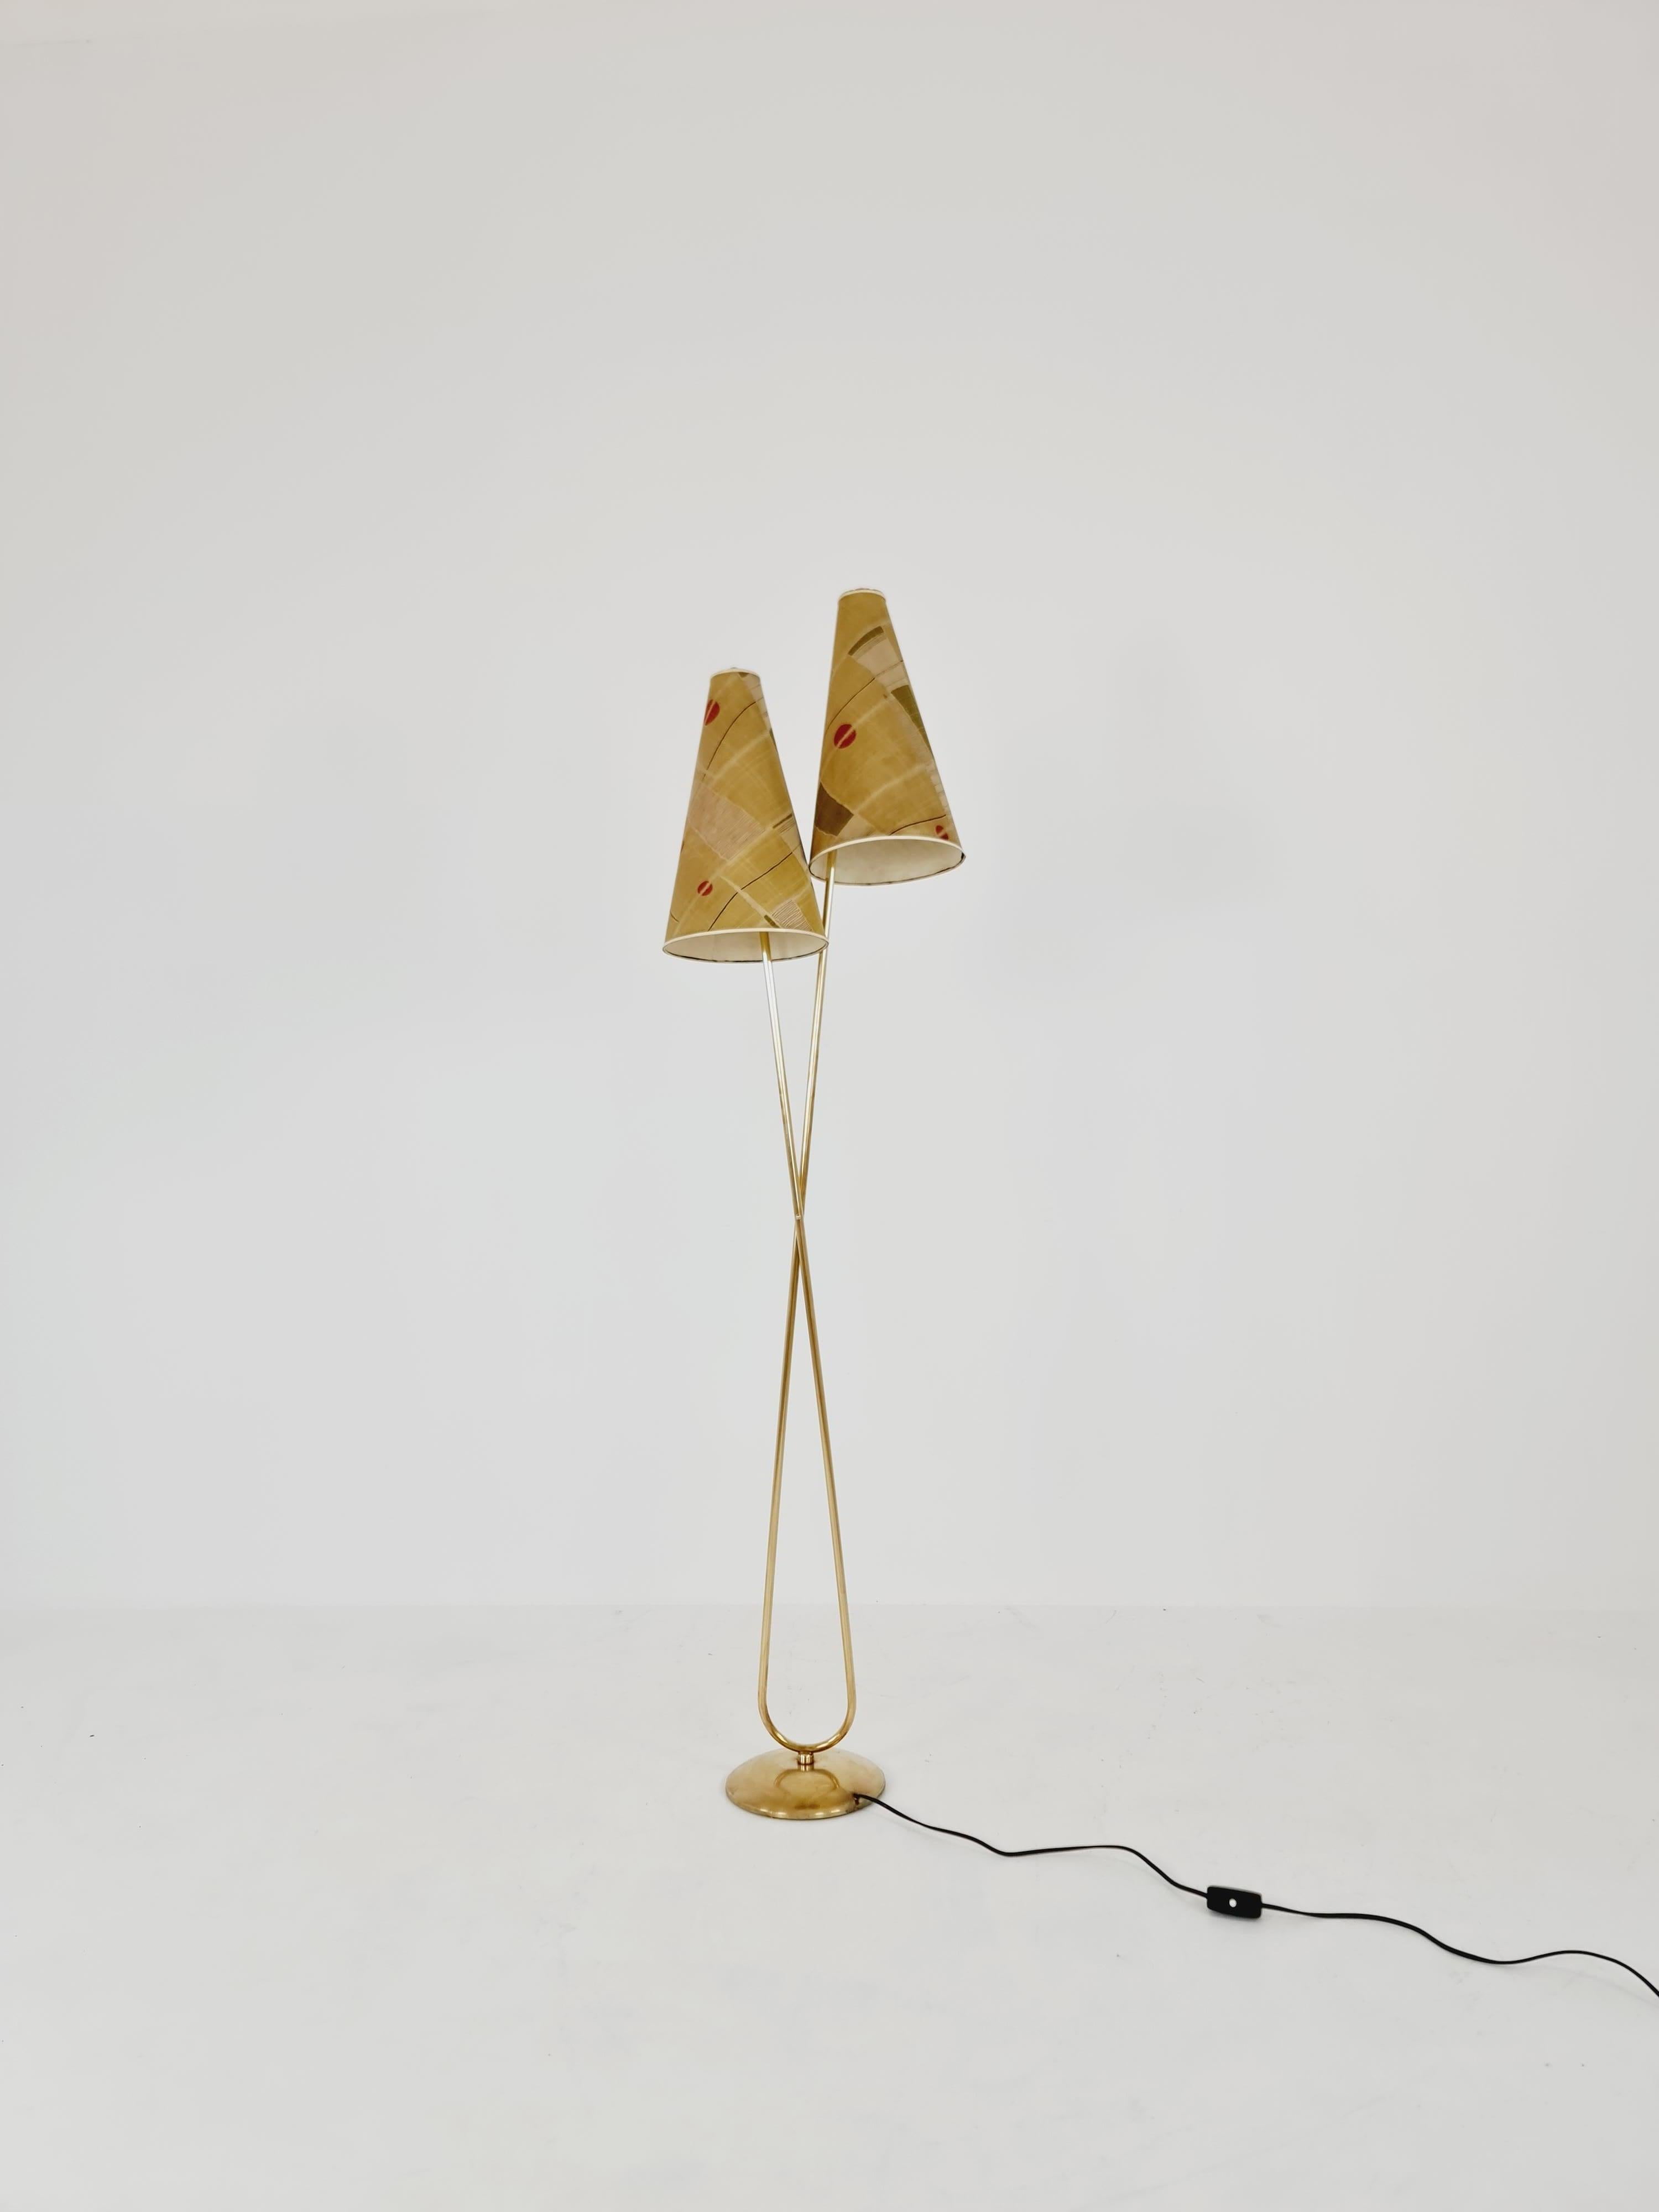 ORGIGINAL EXTREME RARE 1950er vintage stehlampe/ taschenlampe mcm 

Diese Lampe ist extrem selten, ein Unikat. Der Zustand ist für sein Alter perfekt. 

Das Messing ist ebenfalls in einem guten Zustand. 

HERGESTELLT IN DEUTSCHLAND

Design-Jahr: